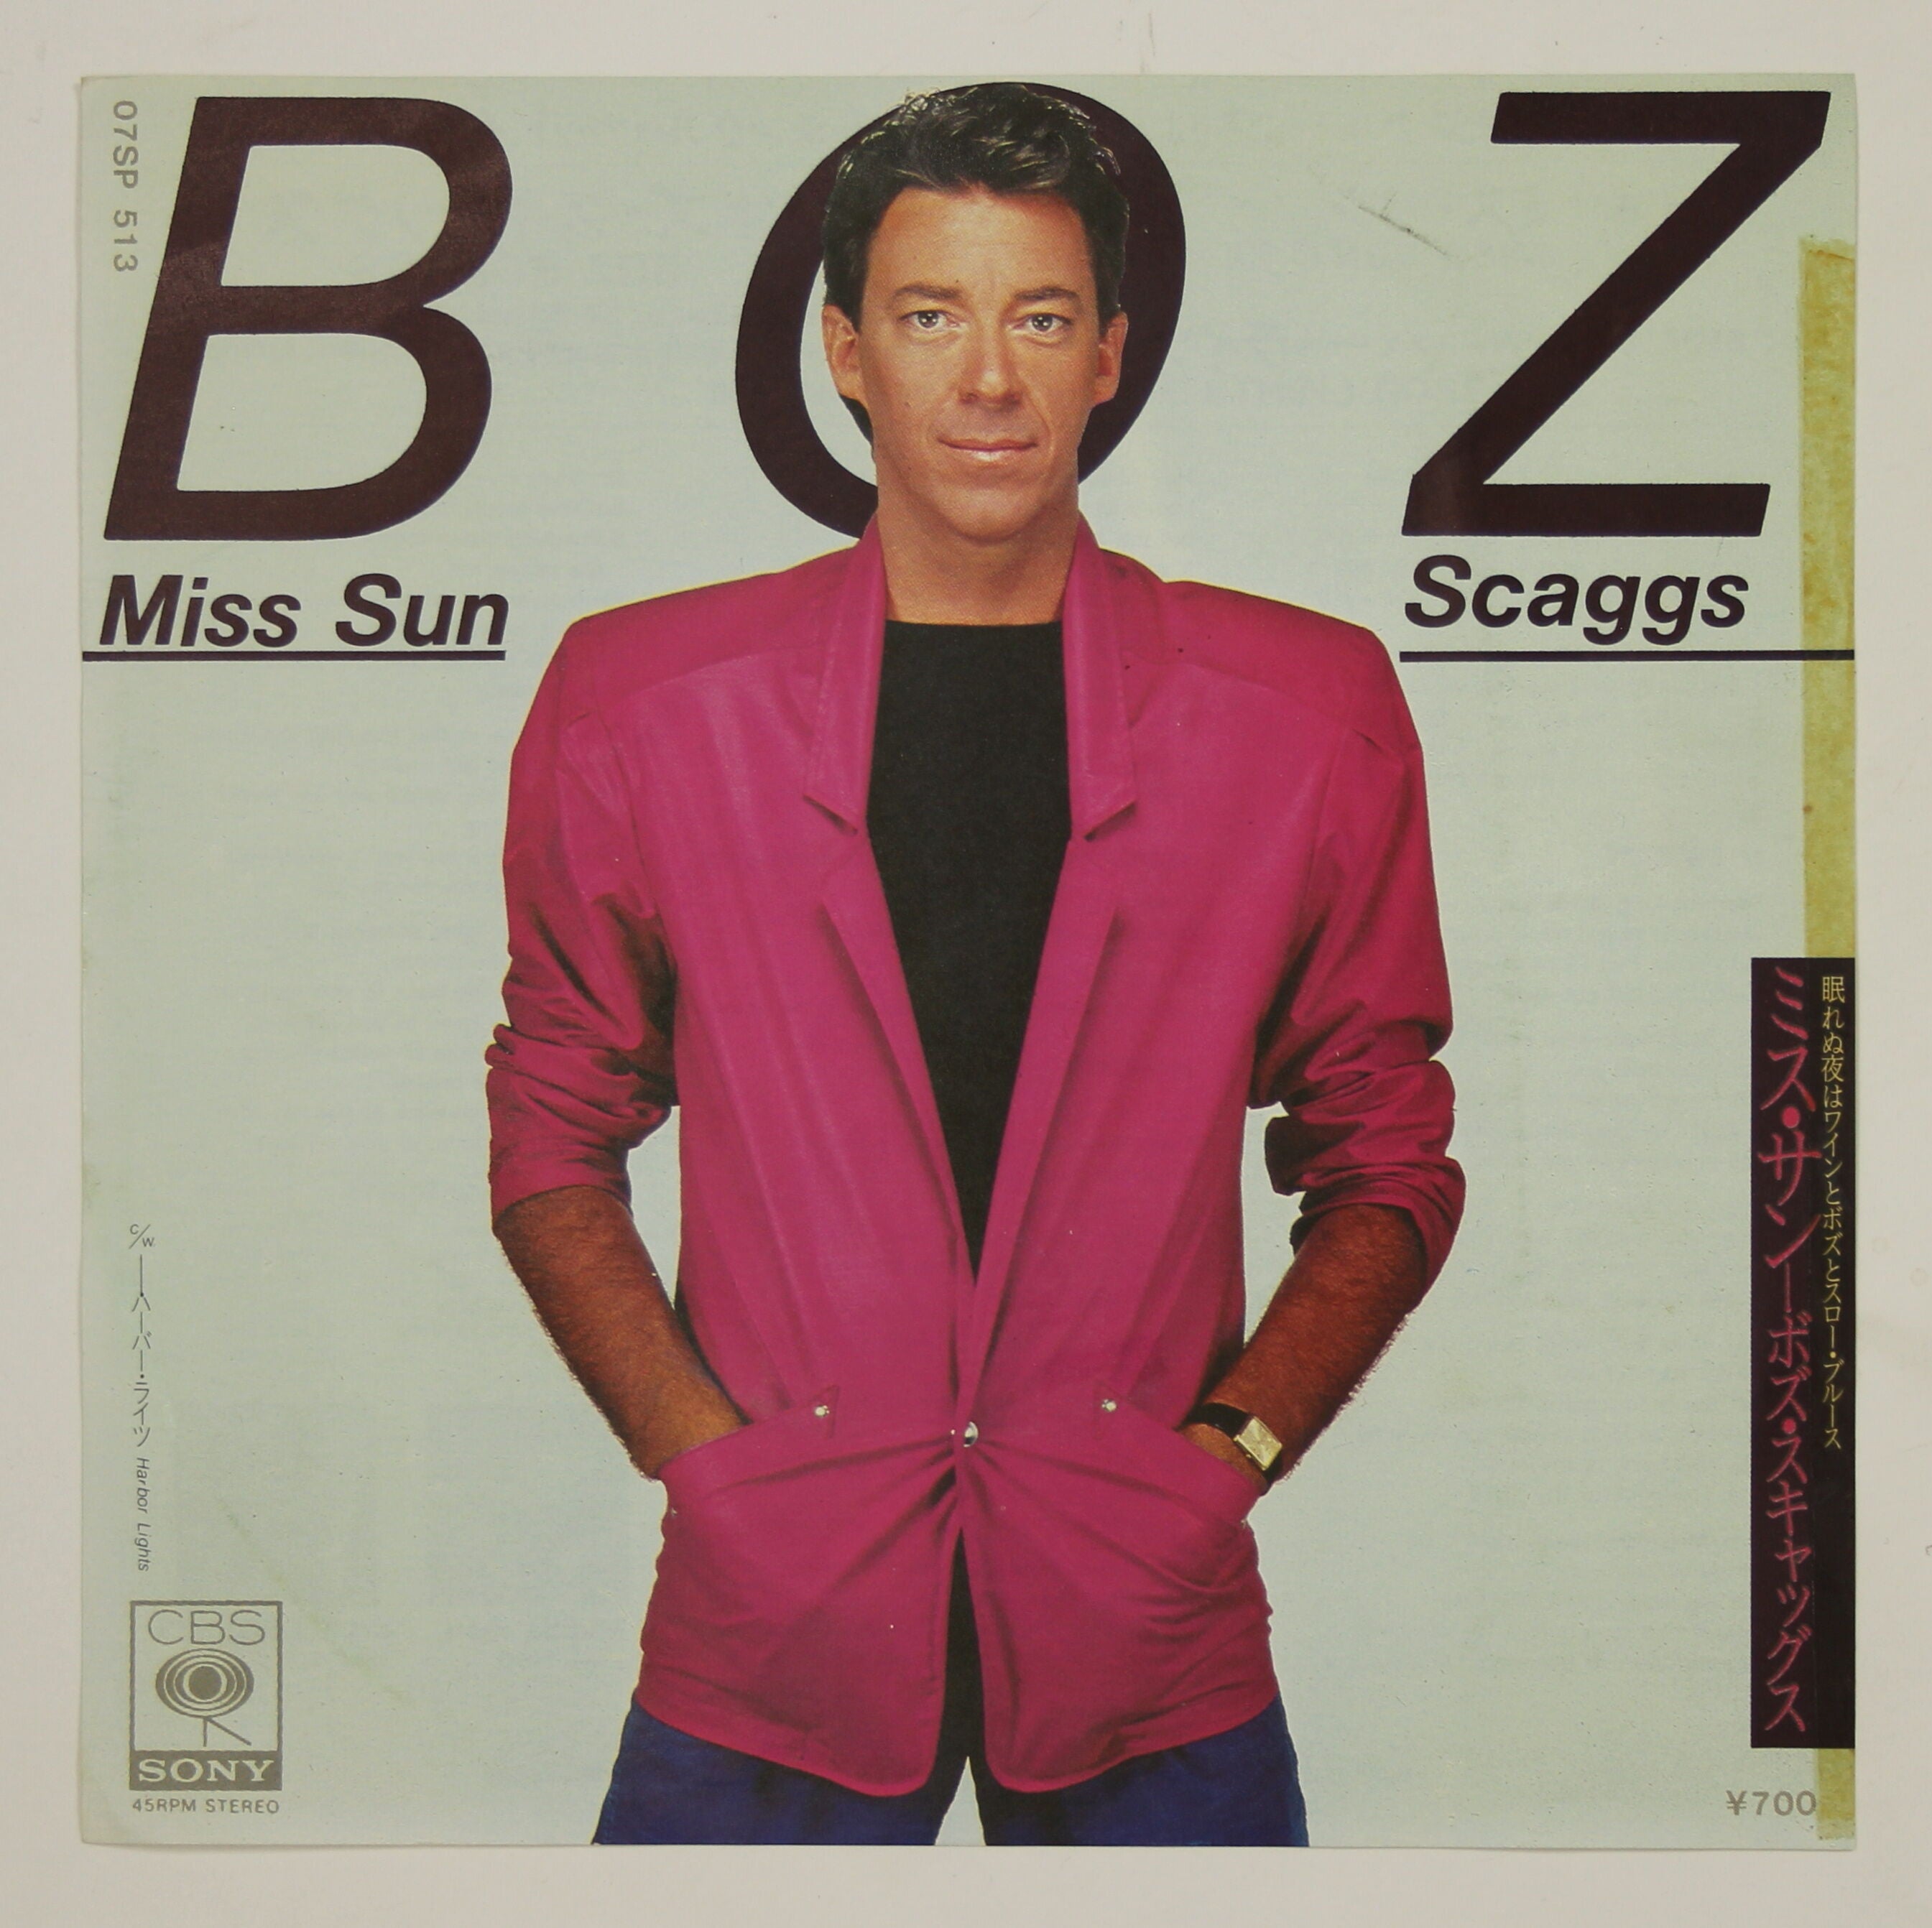 ボズ・スキャッグス Boz Scaggs / ミス・サン Miss Sun – かすみレコード